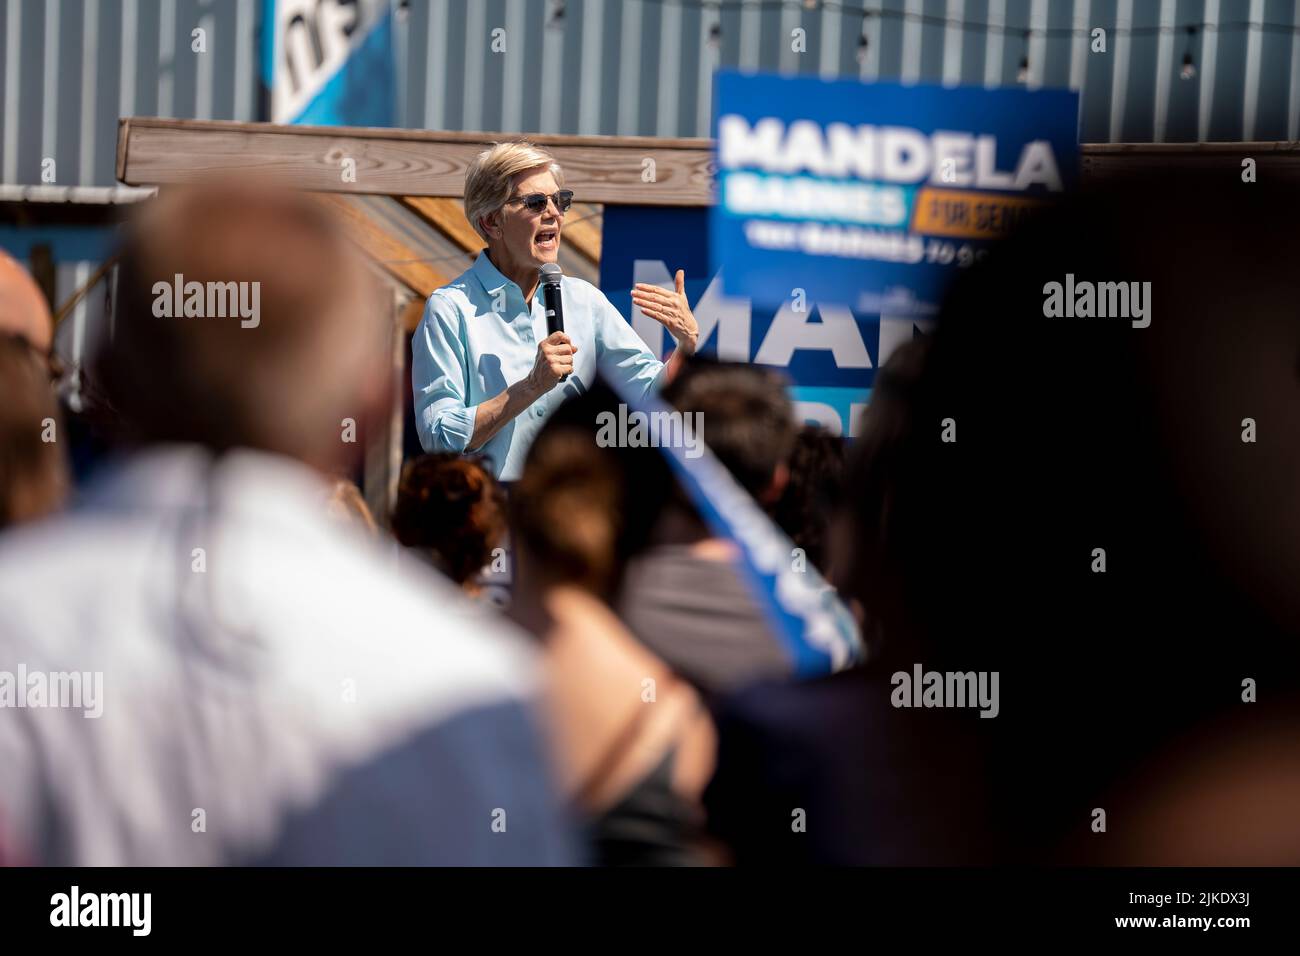 Die demokratische Senatorin Elizabeth Warren spricht bei einer Veranstaltung im Freien für die Kandidatin Mandela Barnes in Milwaukee, Wisconsin. Stockfoto